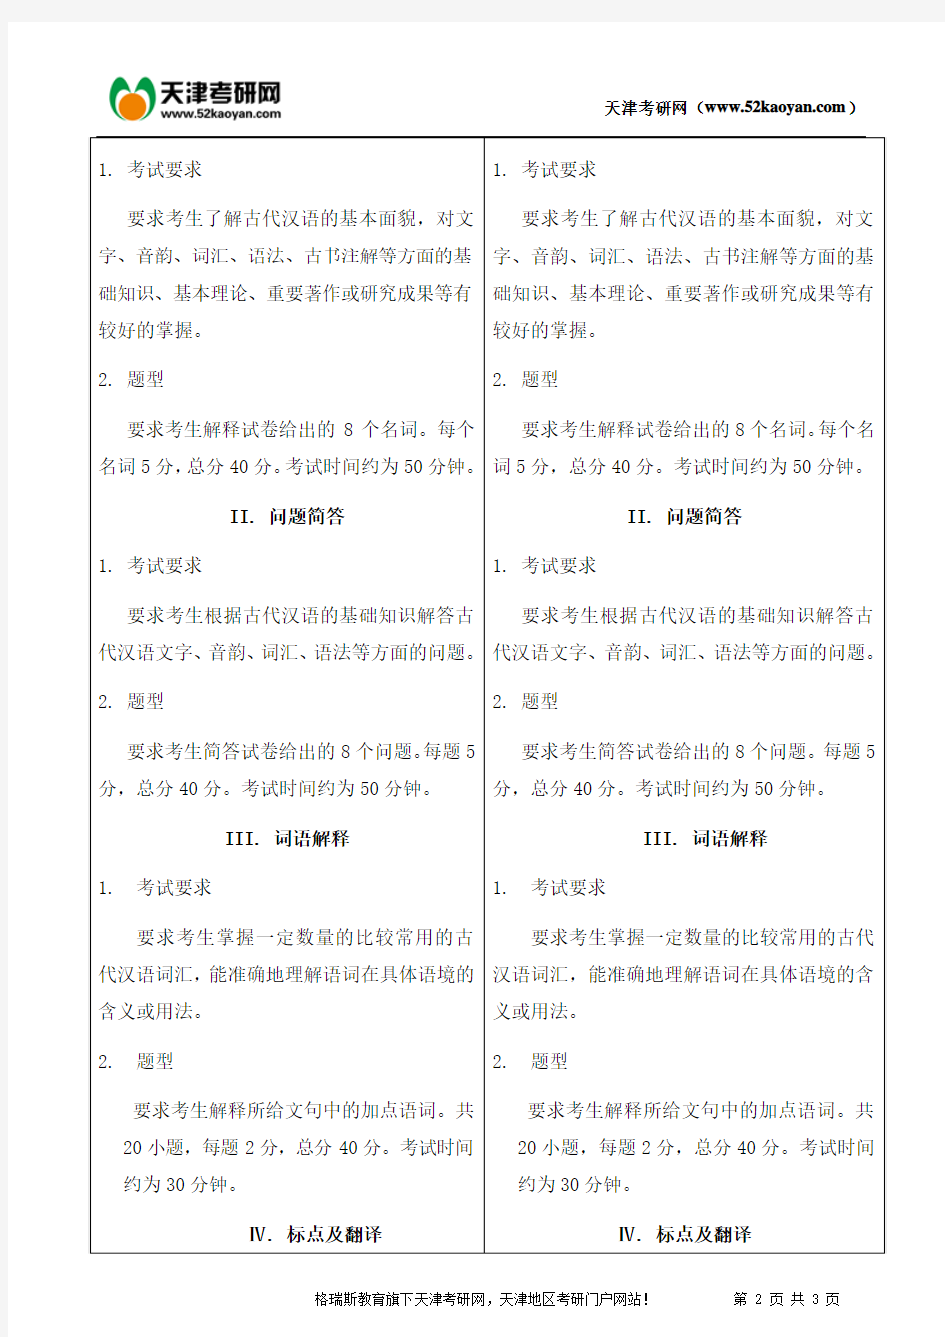 南开大学现代汉语与古代汉语考研复习辅导资料及大纲对比信息